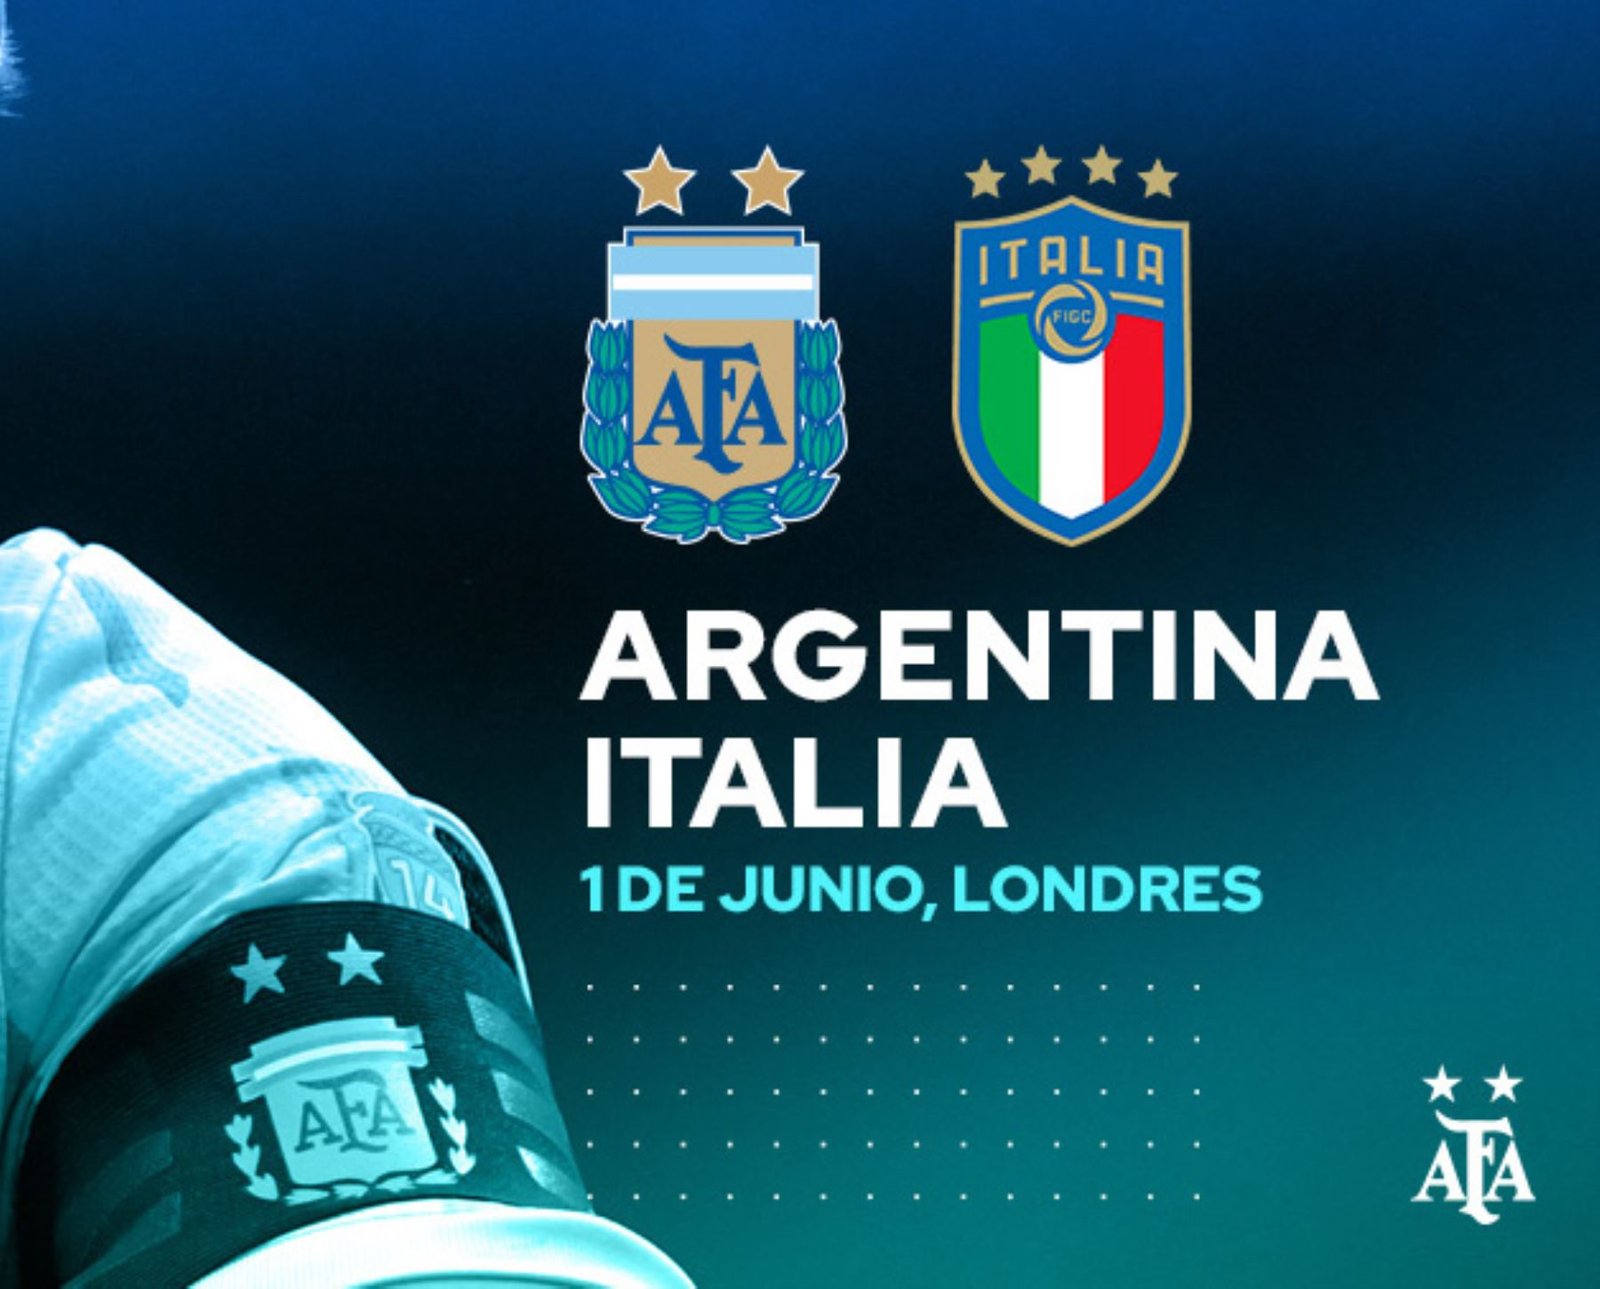 Italia y Argentina, campeones continentales, jugarán una “Finalísima” en Londres